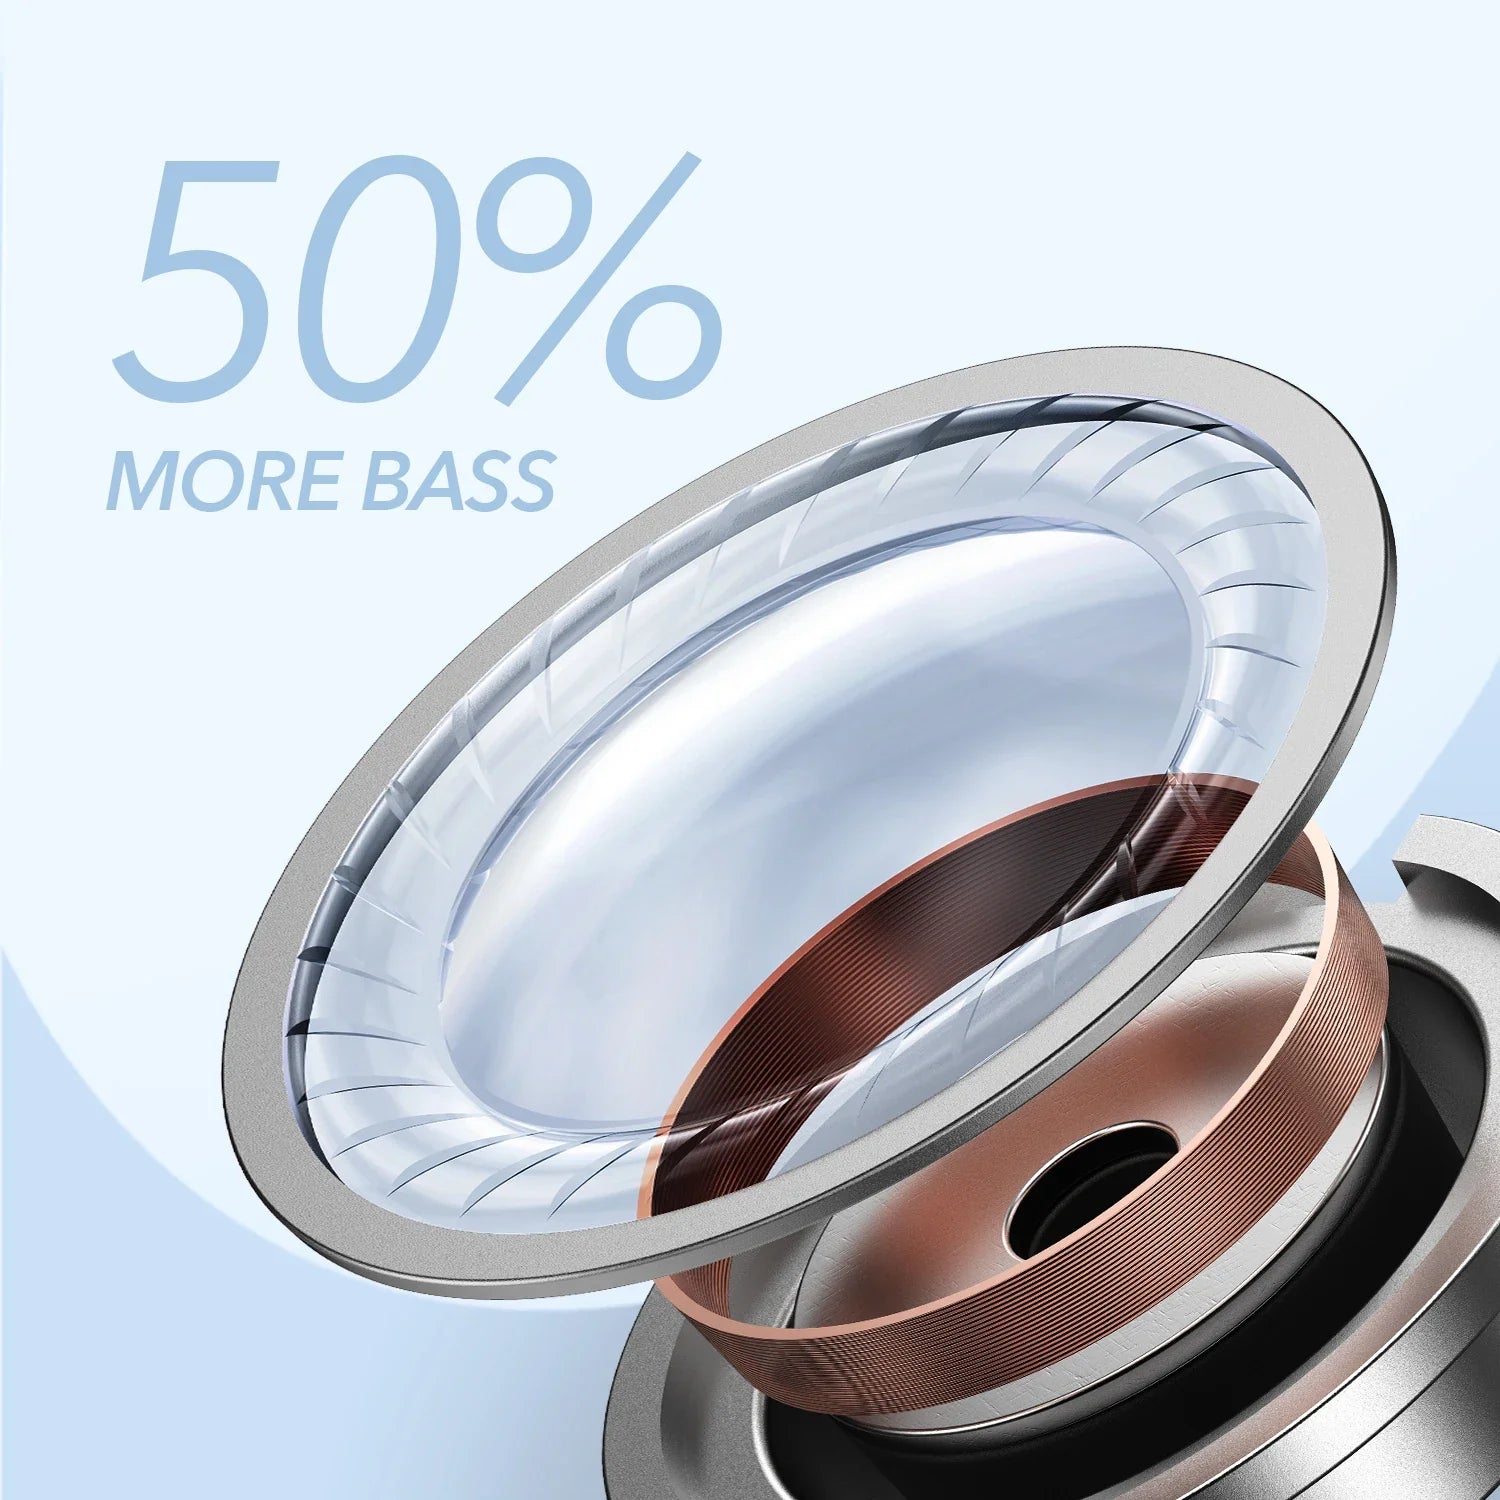 Soundcore Life P2 Mini Wireless Earbuds: Enhanced Bass Performance & AI Calls  ourlum.com   